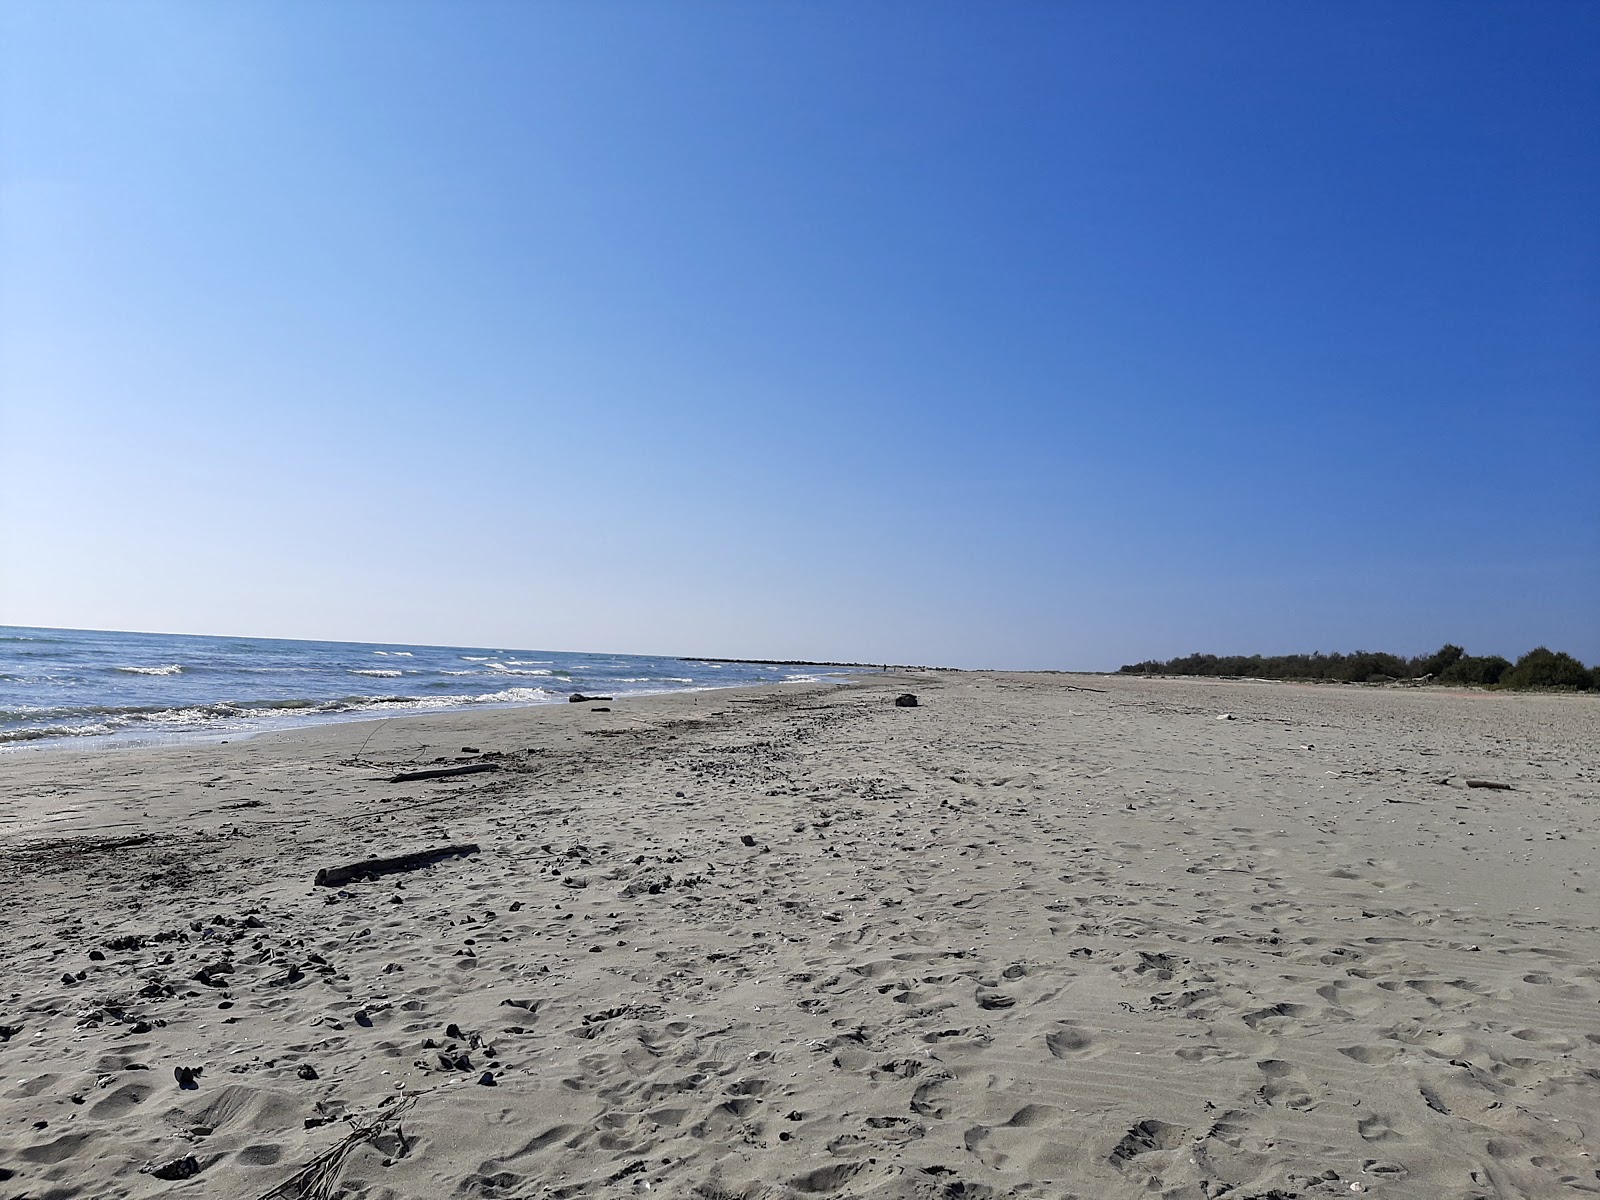 Fotografija Spiaggia Delle Conchiglie z turkizna čista voda površino